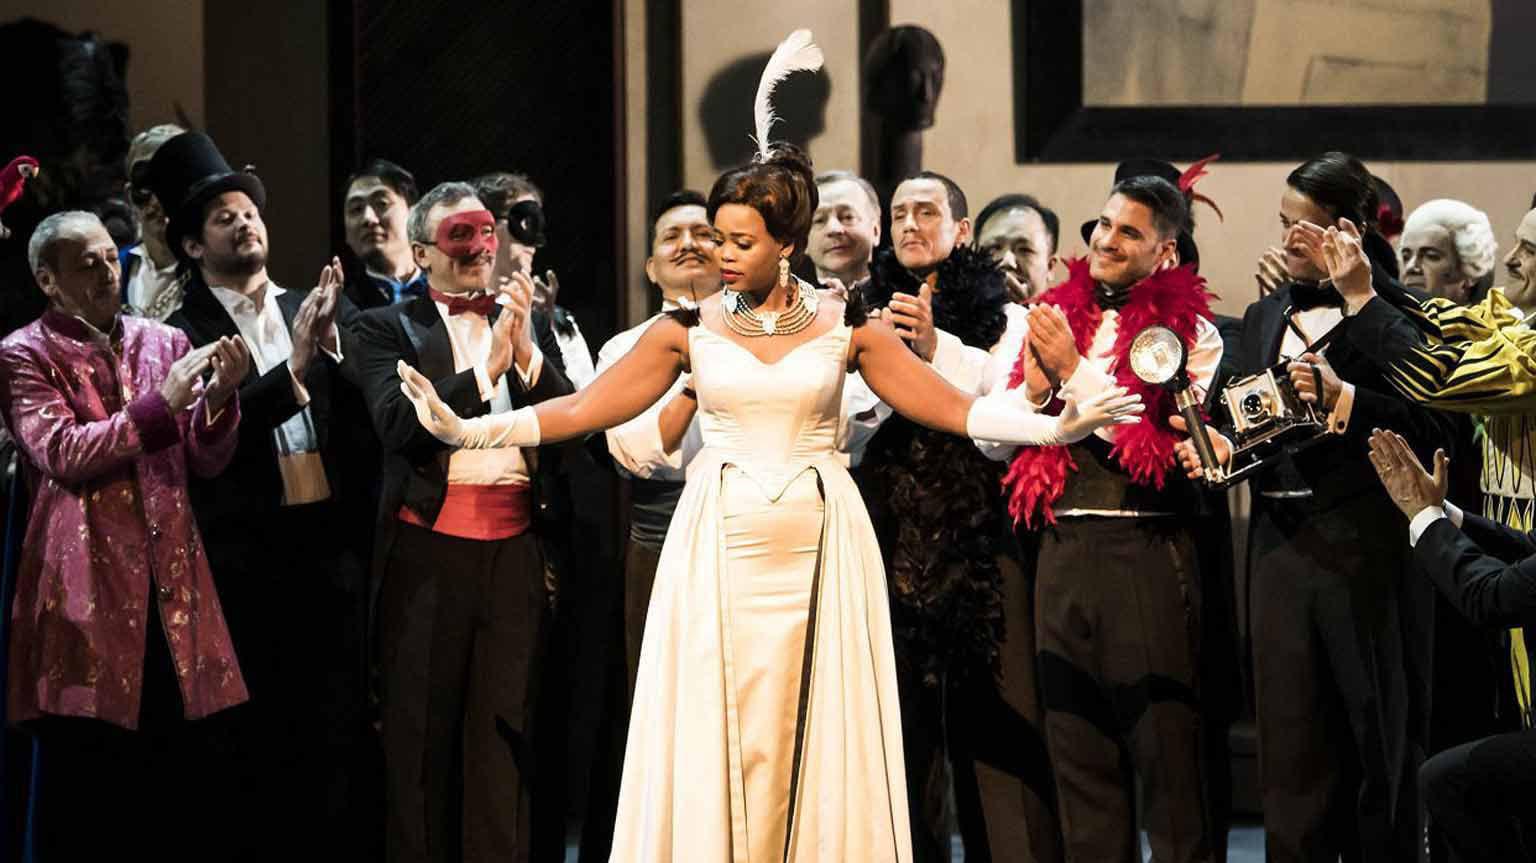 Manon [Opéra National de Paris] backdrop